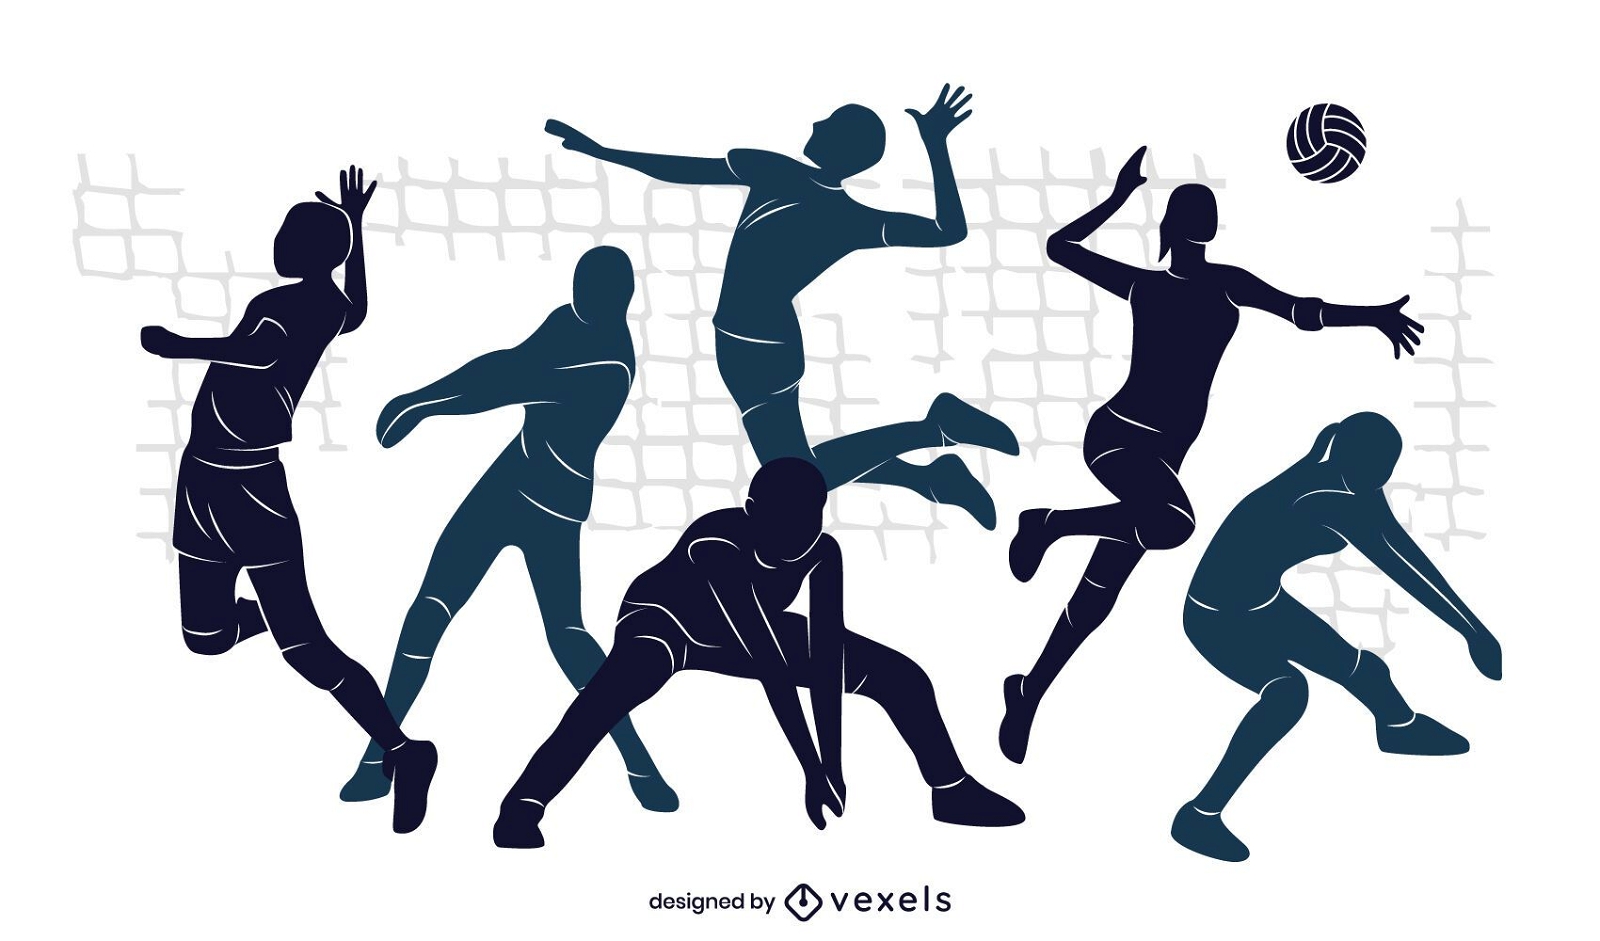 Desenho de ilustração da equipe de voleibol